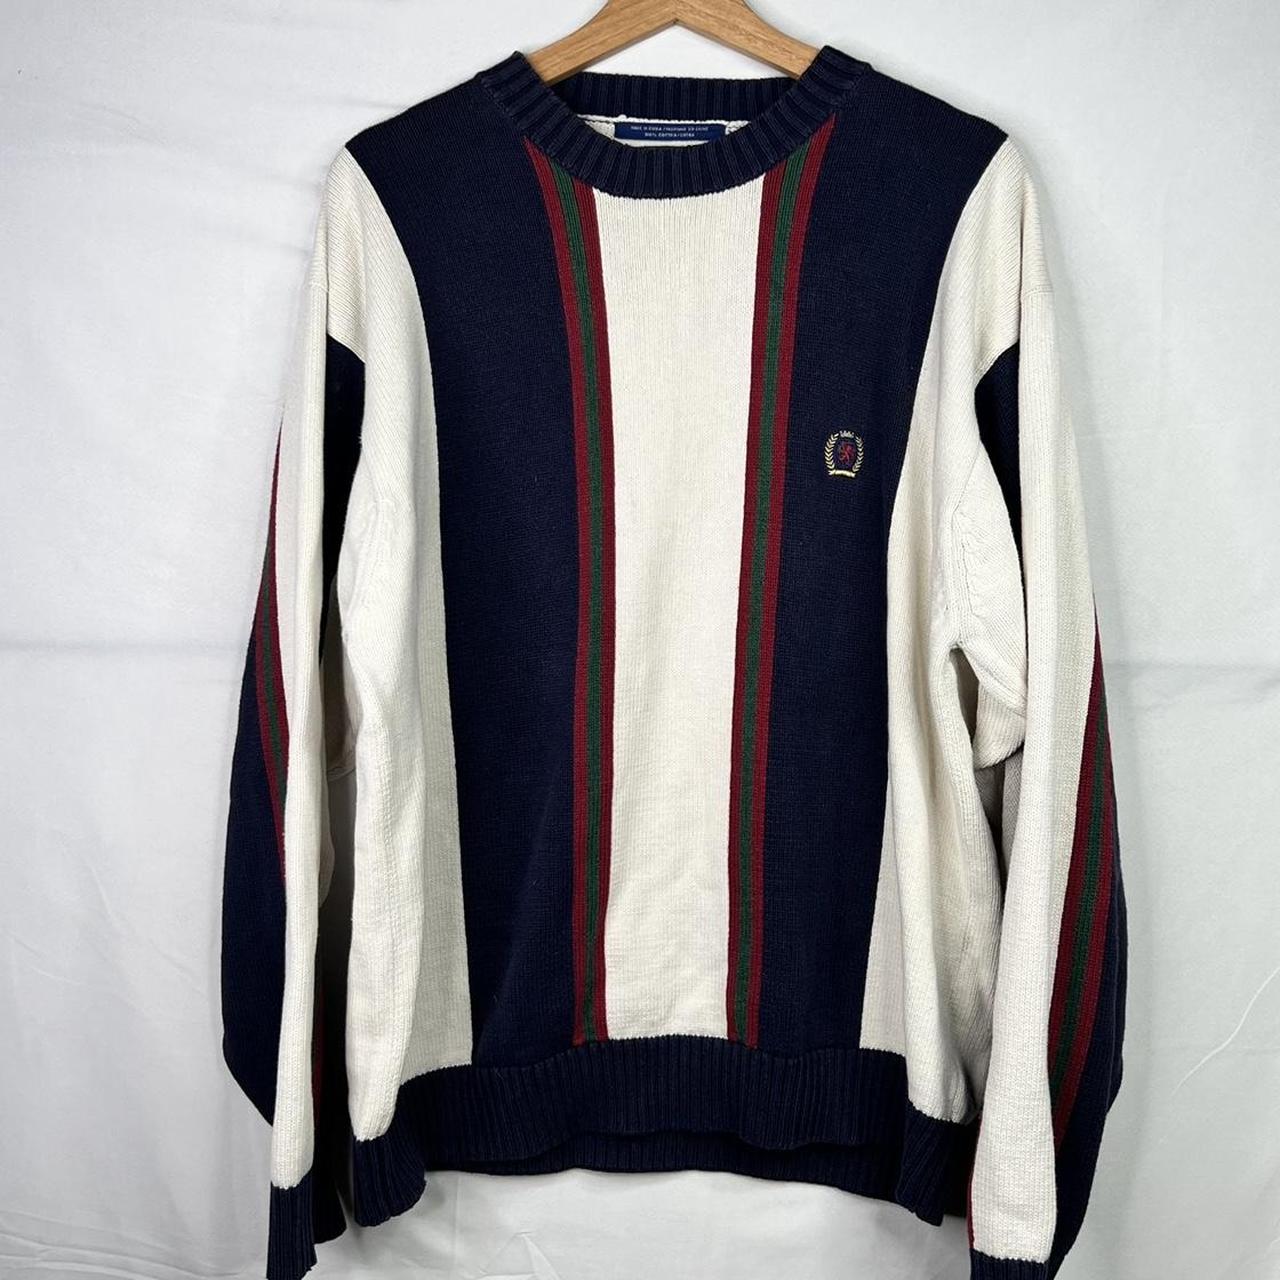 Vintage Tommy Hilfiger Vertical Striped Knitted... - Depop